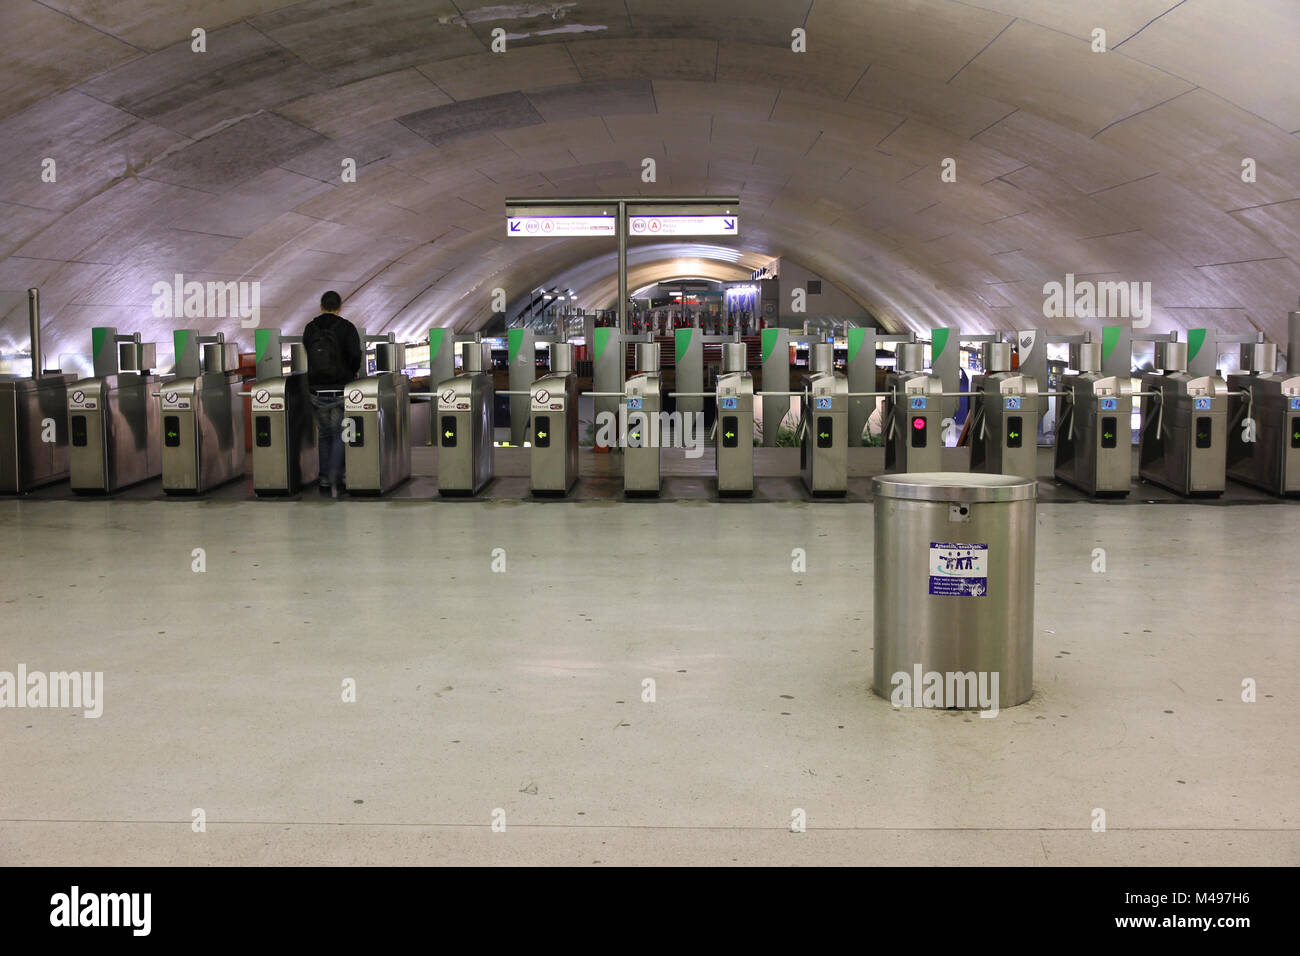 PARIS, FRANCE - 23 juillet 2011 : la station de métro de Paris à Paris, France. Métro de Paris est le 2ème plus grand système de métro dans le monde entier par nombre de stations Banque D'Images